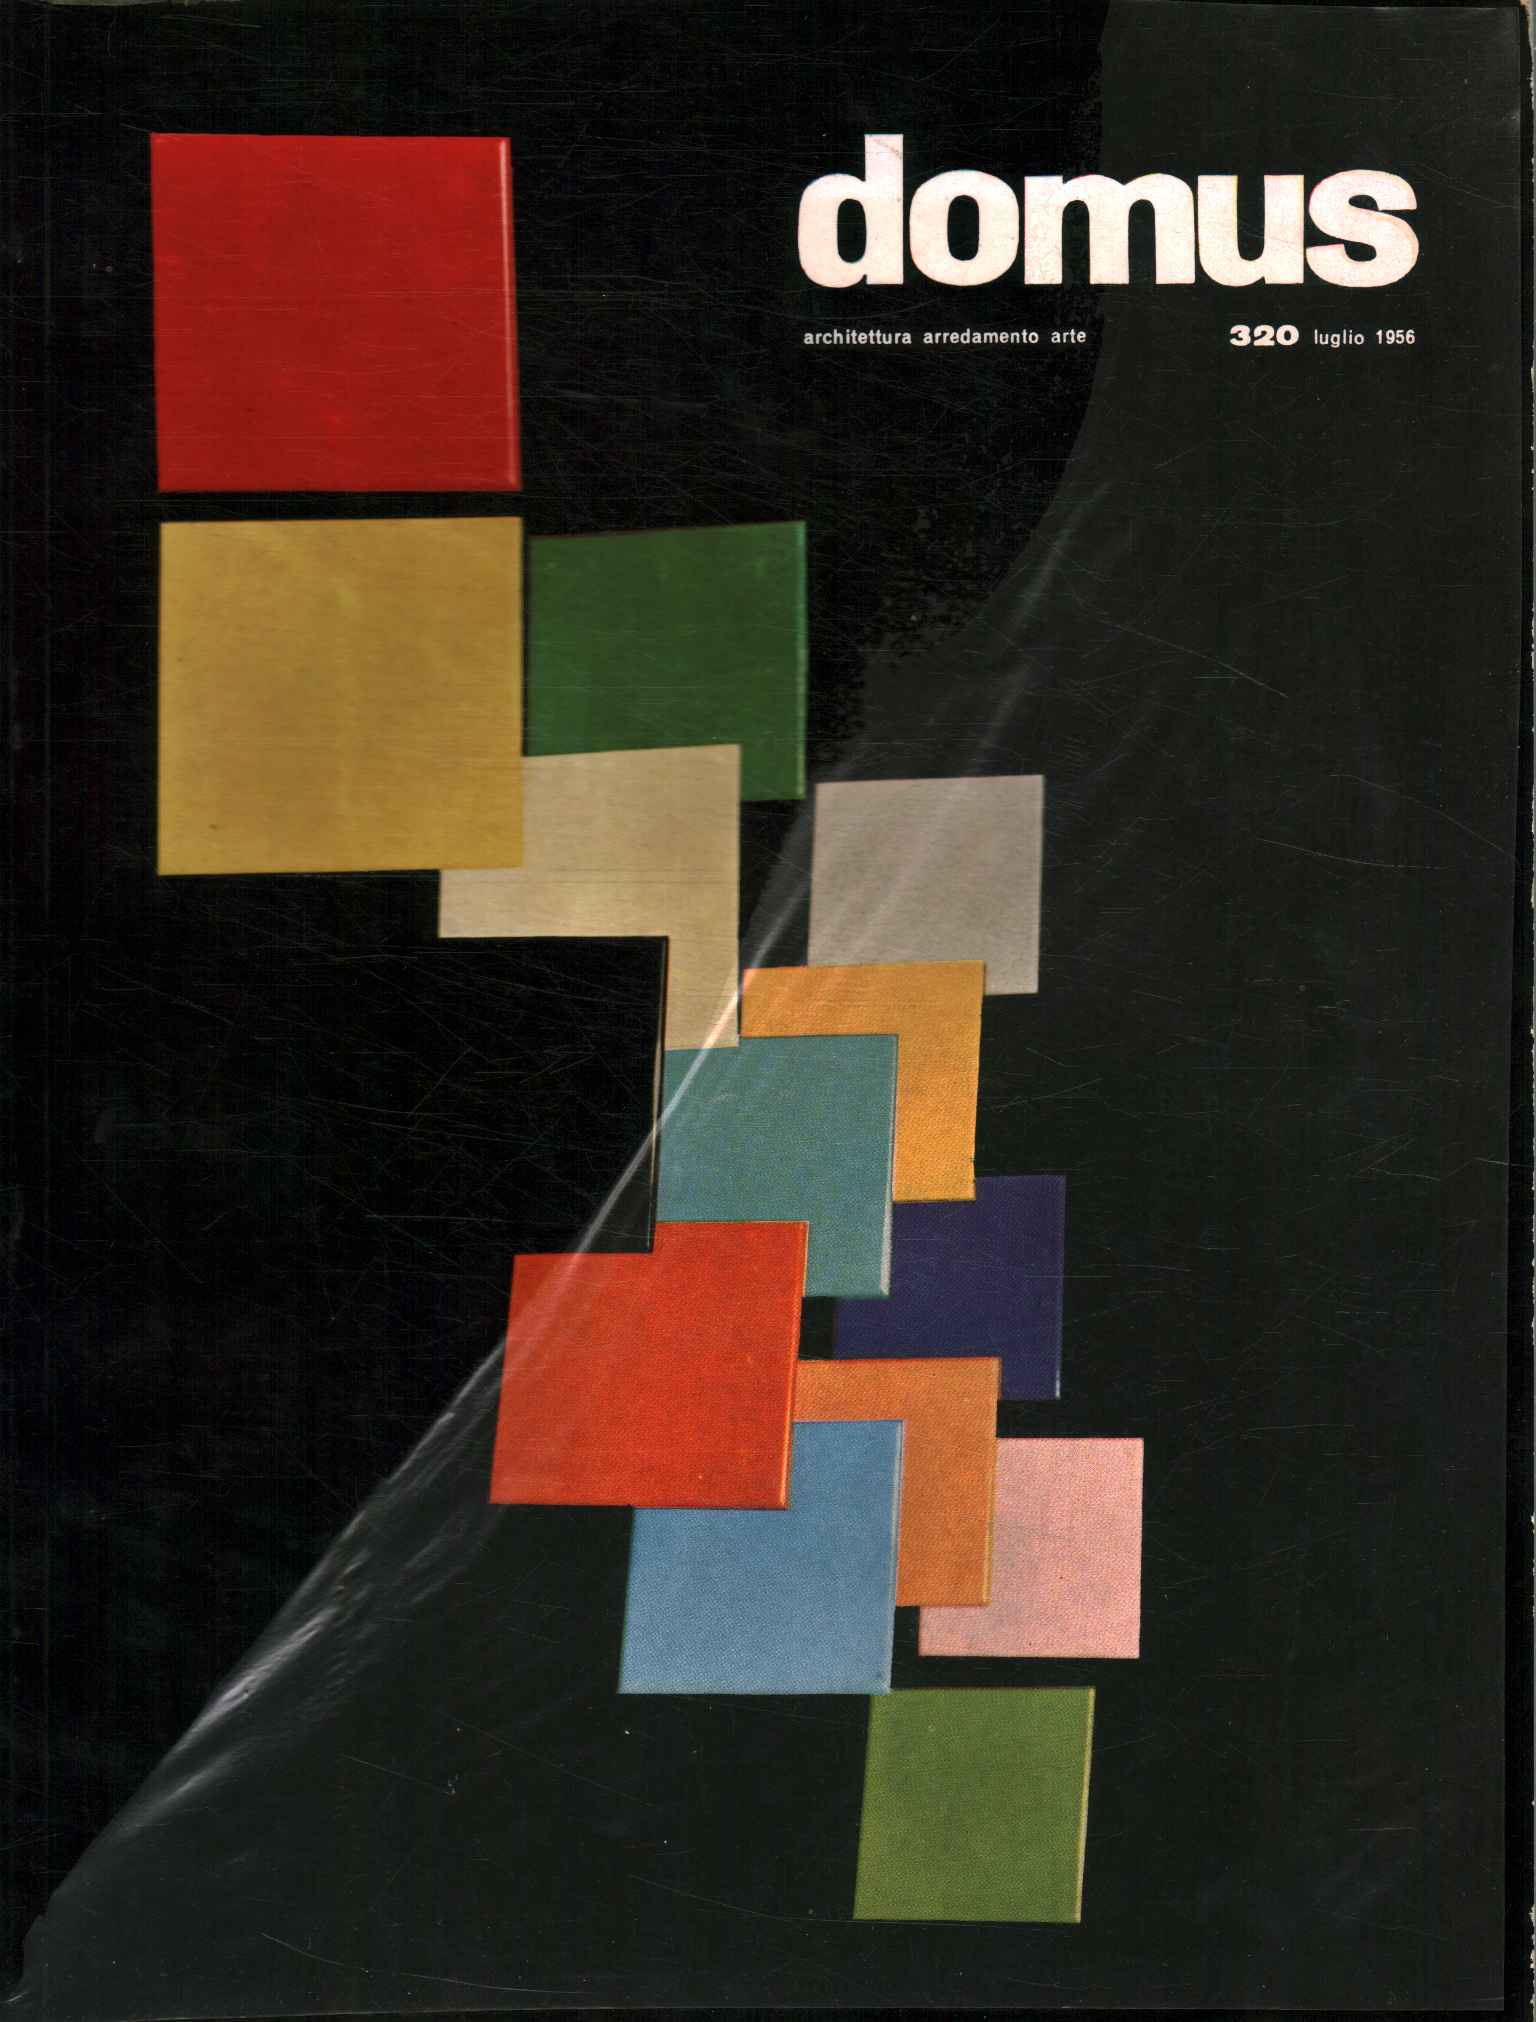 Domus. Arquitectura, mobiliario, arte (julio